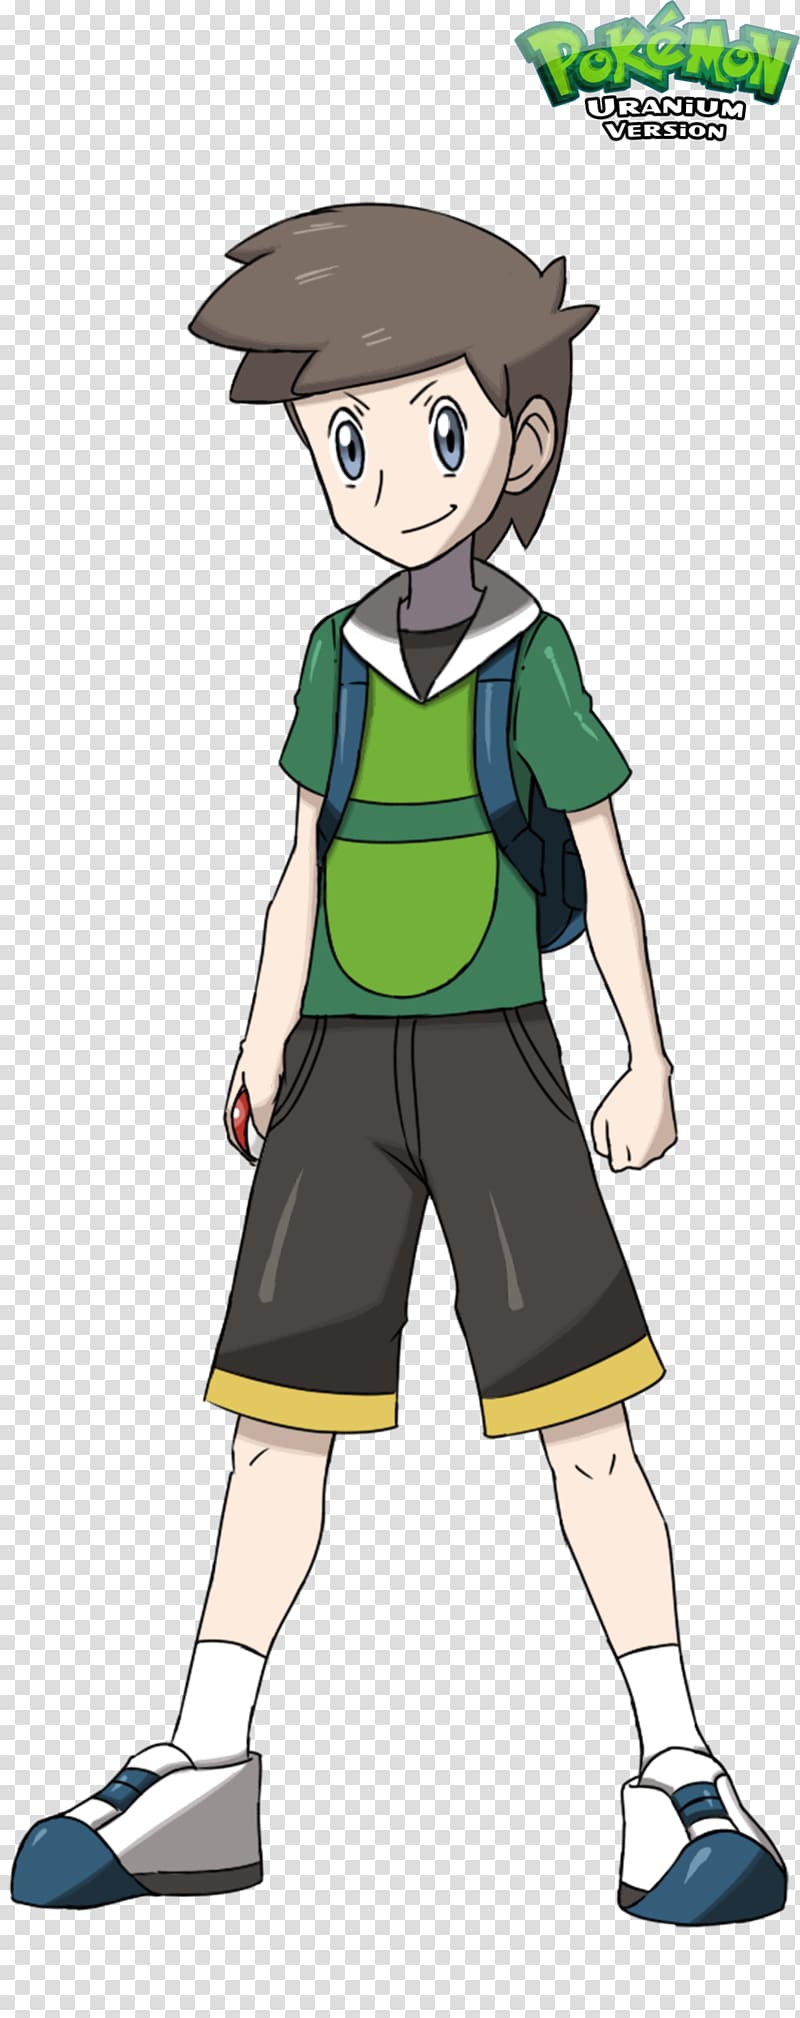 Pokémon Uranium Pokémon Red and Blue Pokémon Sun and Moon Ash Ketchum, goal transparent background PNG clipart